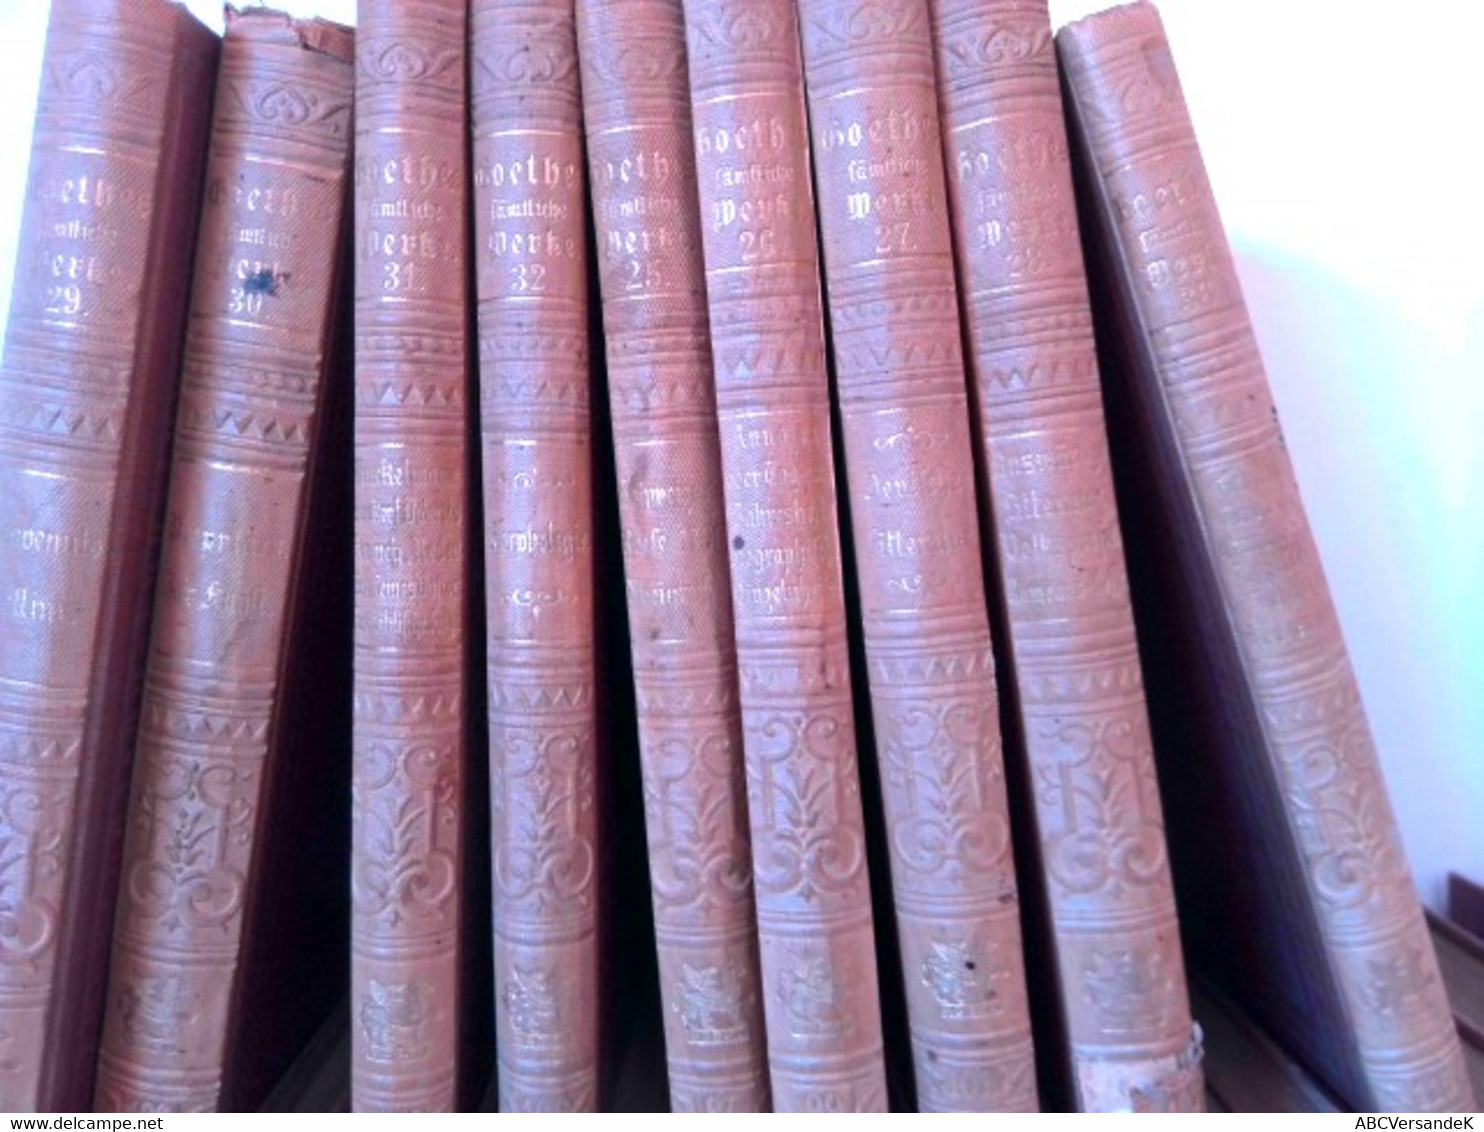 Konvolut Bestehend Aus 36 Bänden Zum Thema: Goethes Sämtliche Werke Aus Der  Cottasche Bibliothek Der Weltlite - German Authors